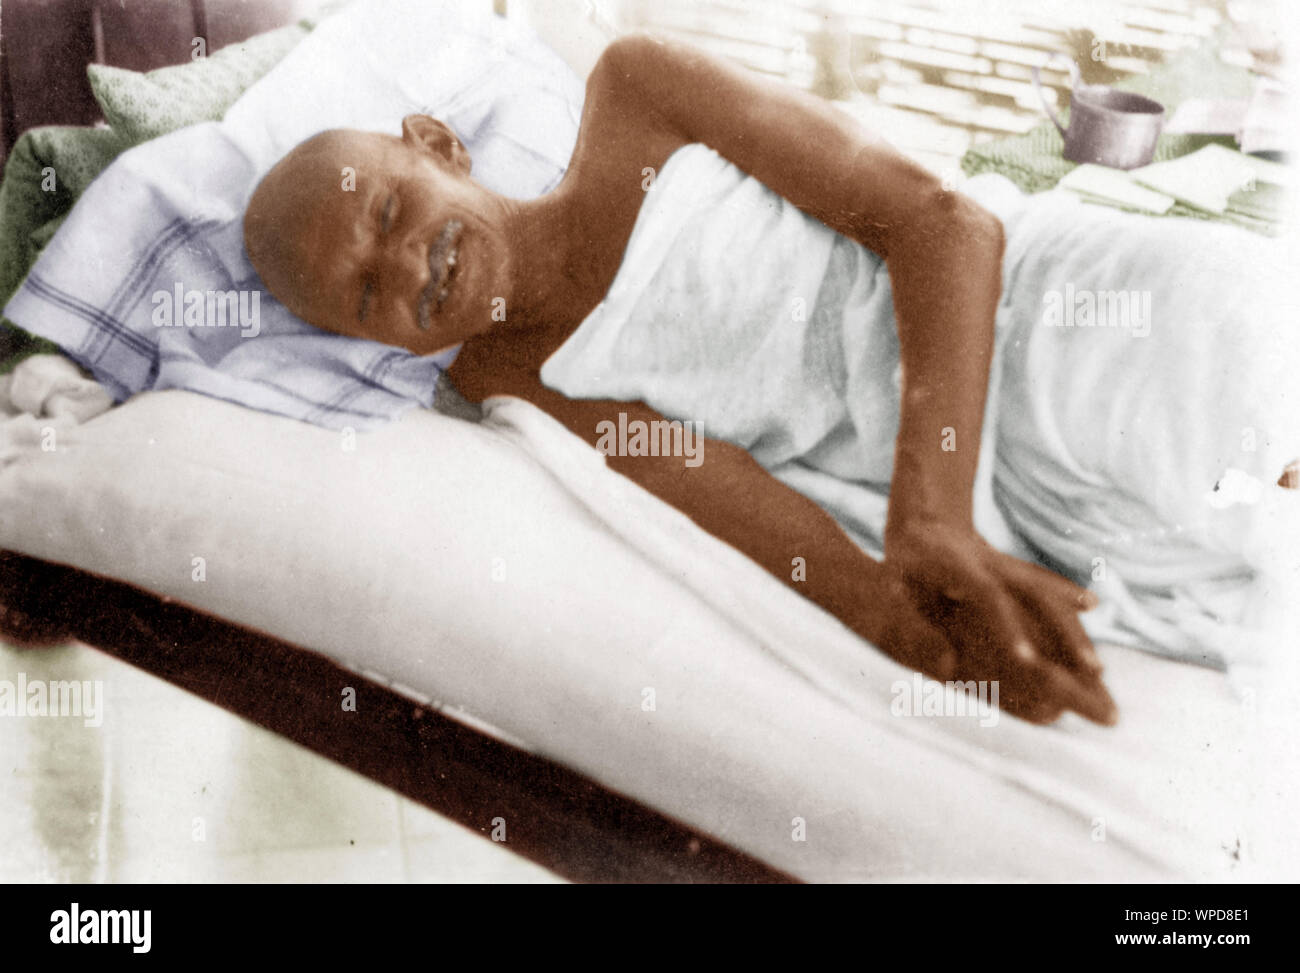 Mahatma Gandhi resting fasting at Parnakuti, Poona, Maharashtra, India, Asia, May 20, 1933, old vintage 1900s photo Stock Photo